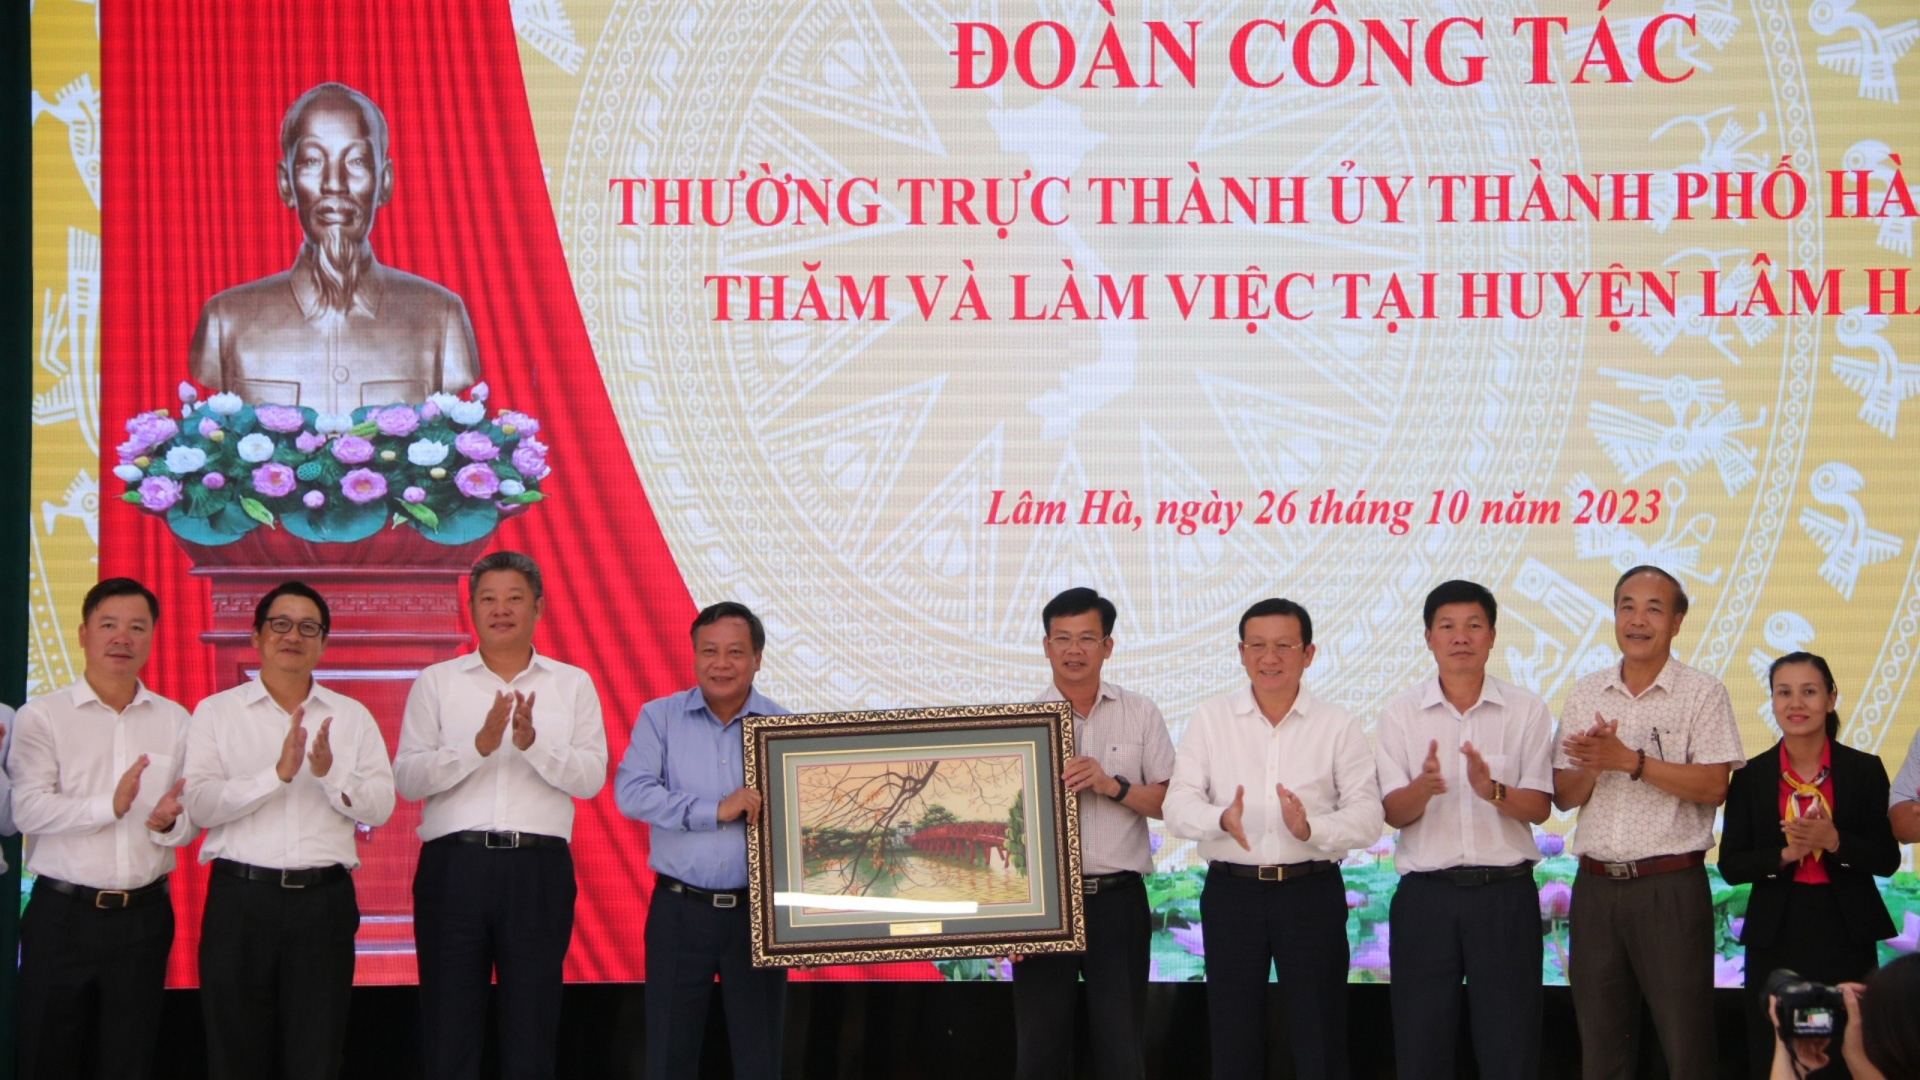 Đoàn công tác Hà Nội tặng quà lưu niệm cho huyện Lâm Hà